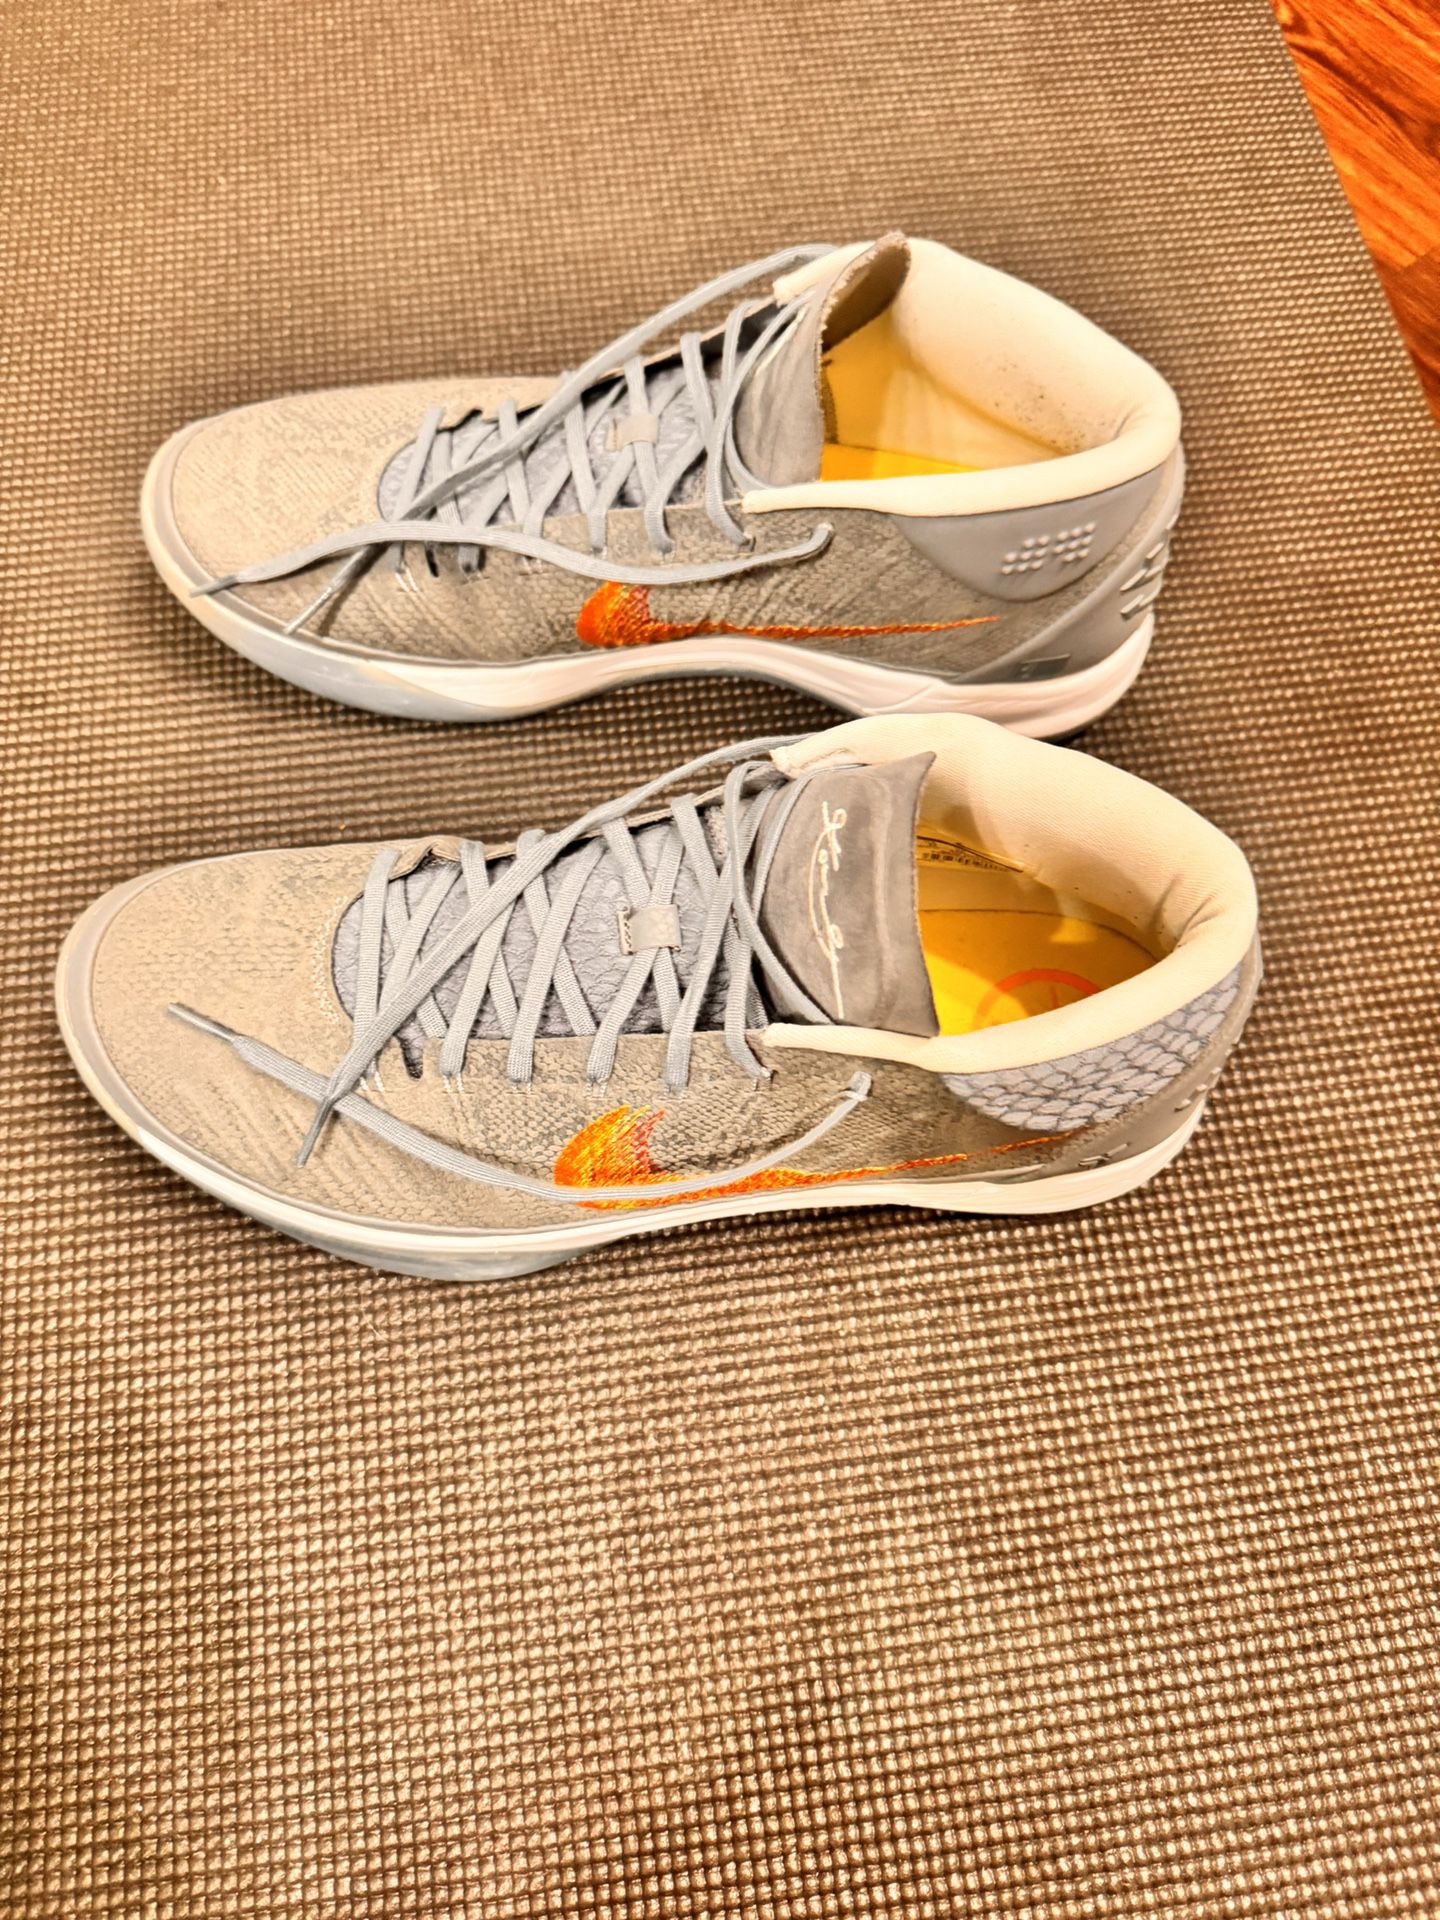 Nike Kobe AD Shoes